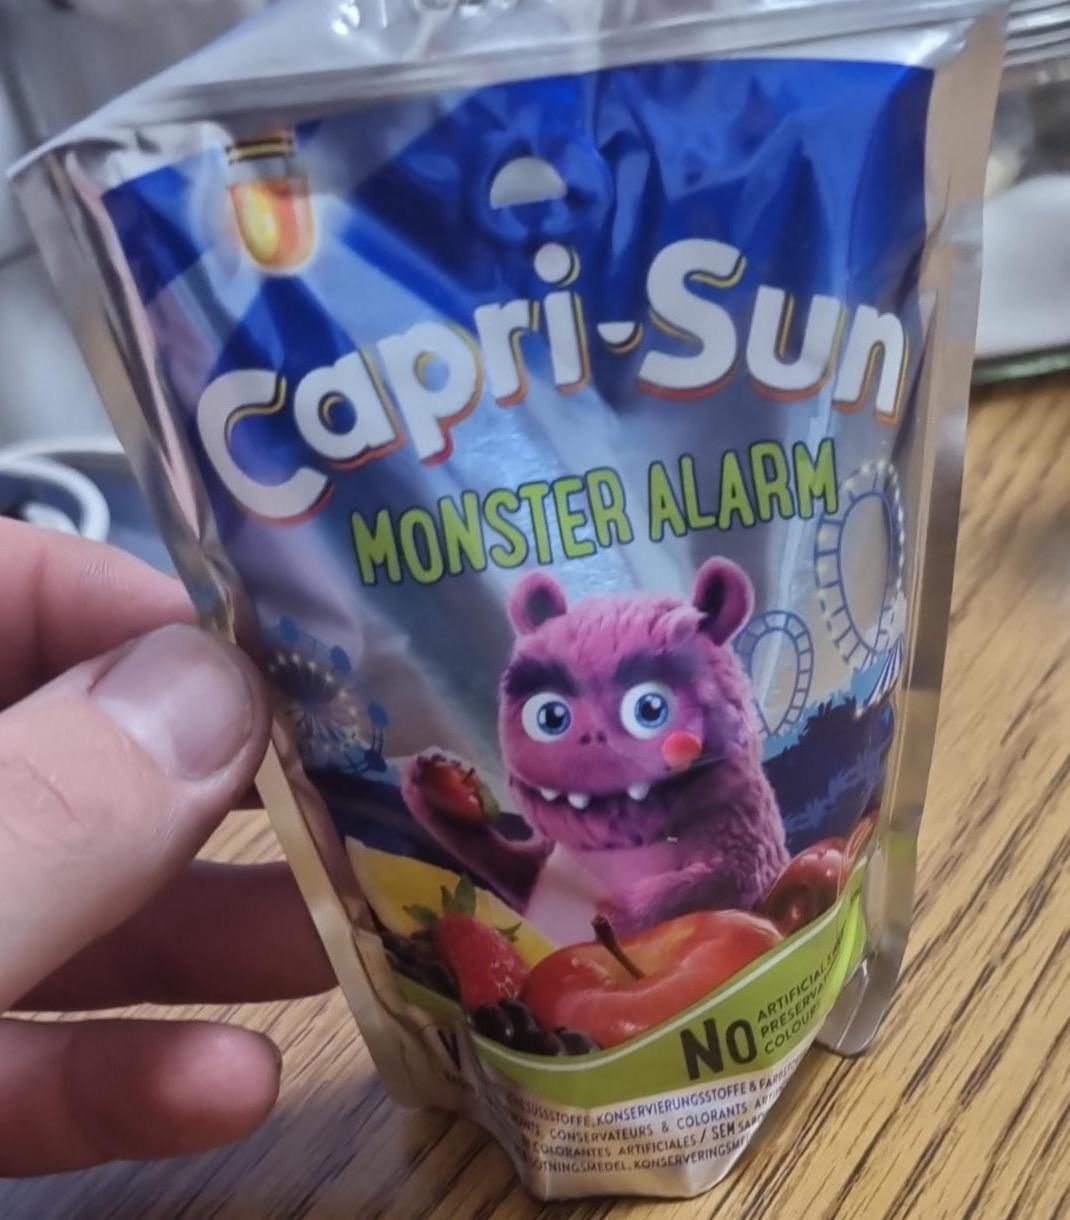 Képek - Monster alarm Capri-Sun